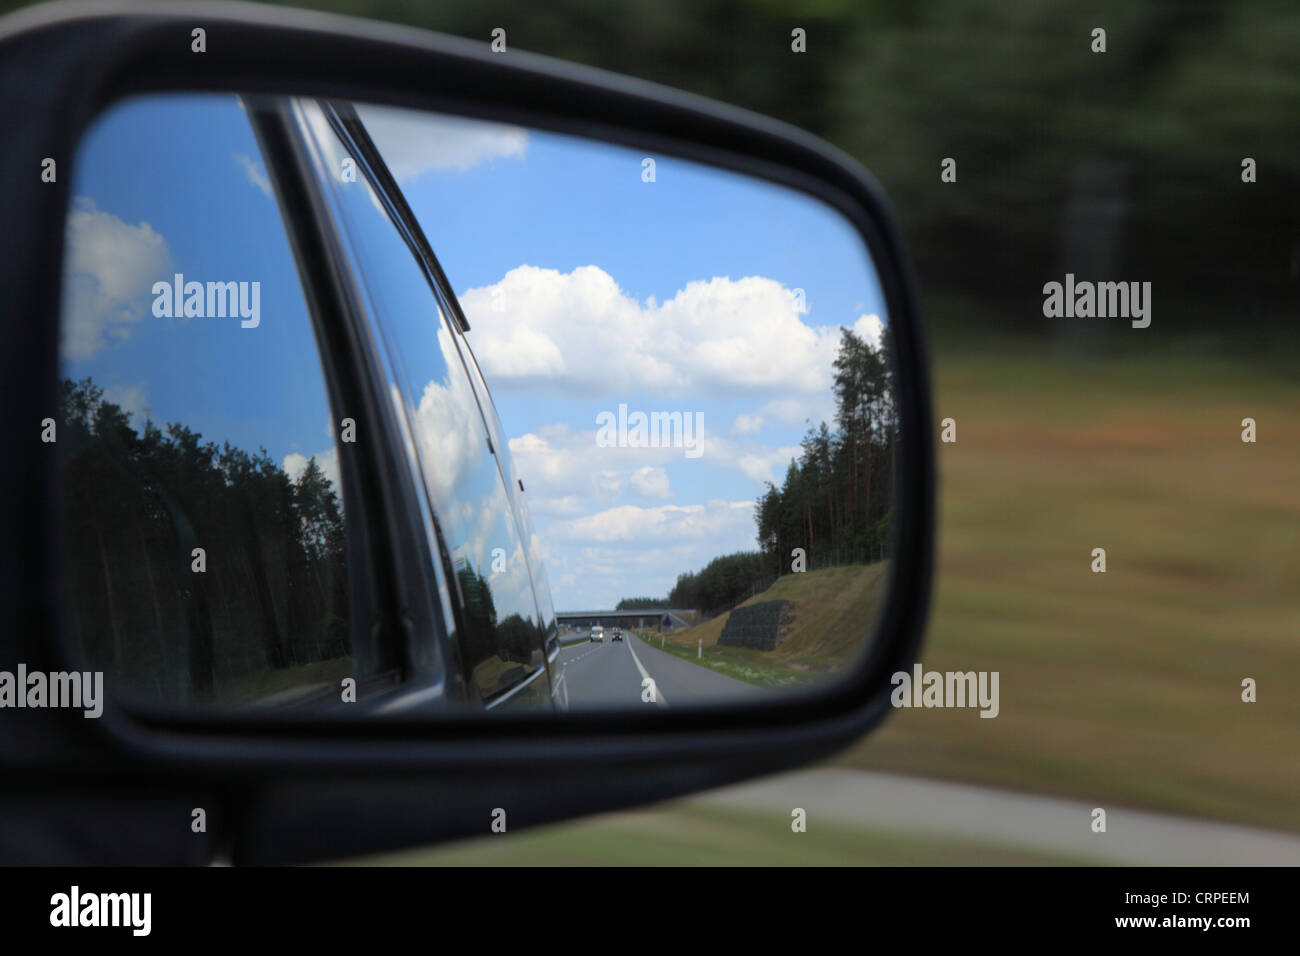 Auto-Seitenspiegel, Blick durch schmutziges Autofenster, Spiegelung im  Spiegel Stockfotografie - Alamy